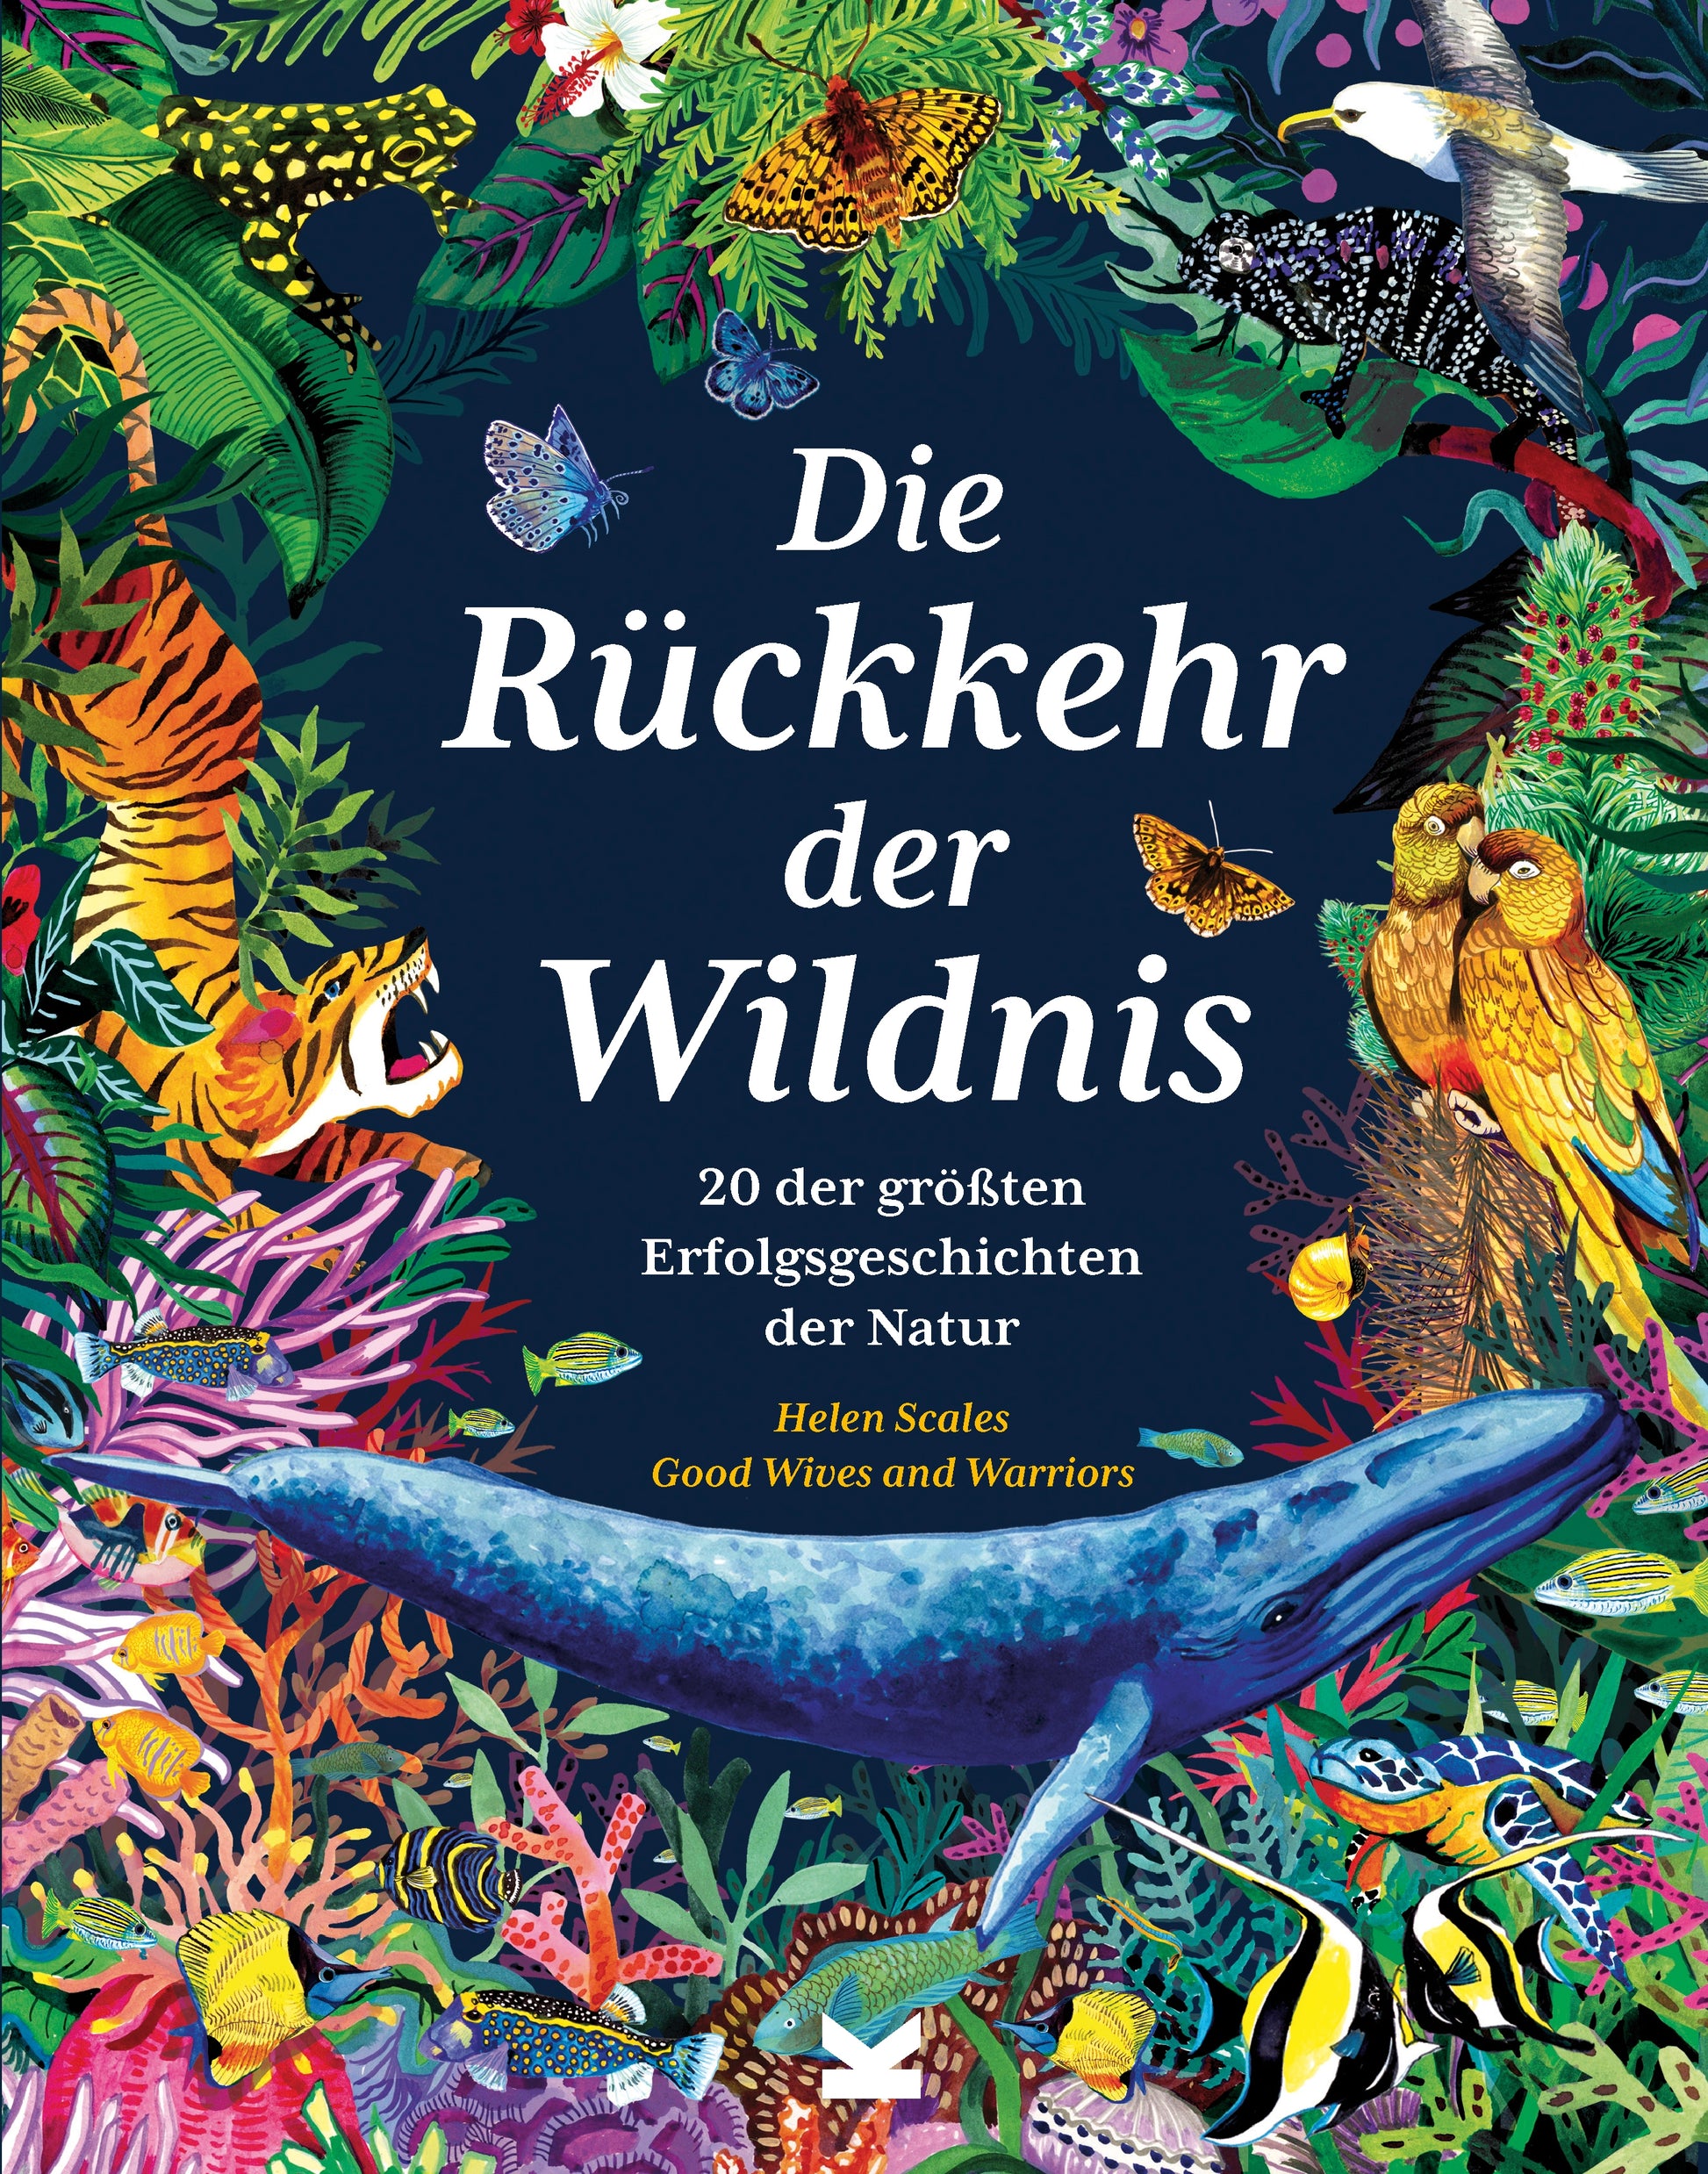 Die Rückkehr der Wildnis by Frederik Kugler, Helen Scales